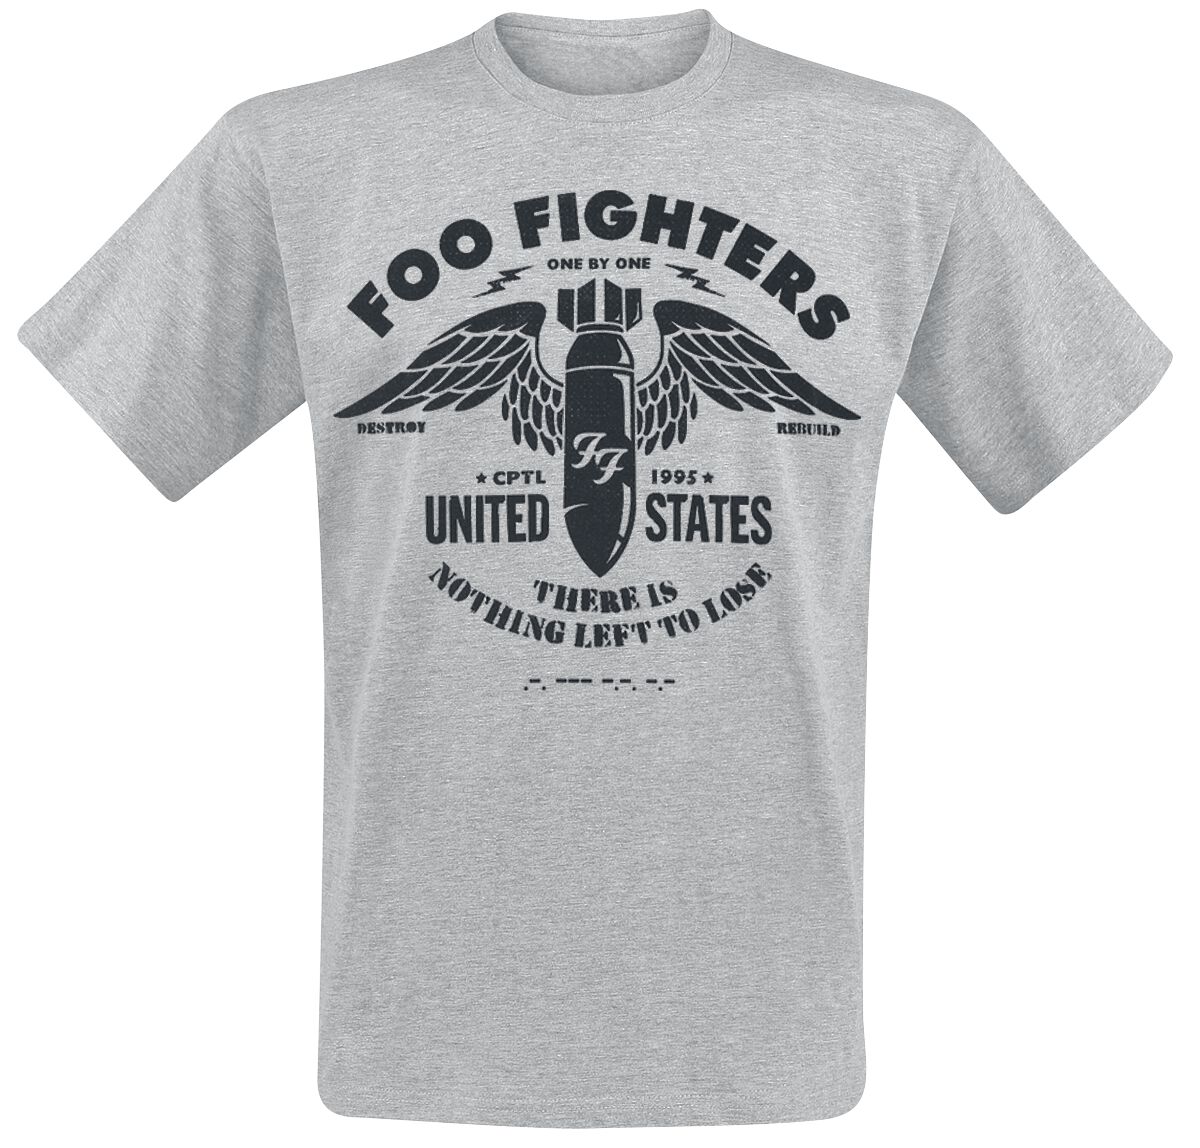 Foo Fighters T-Shirt - Stencil - S bis XXL - für Männer - Größe M - hellgrau meliert  - Lizenziertes Merchandise!